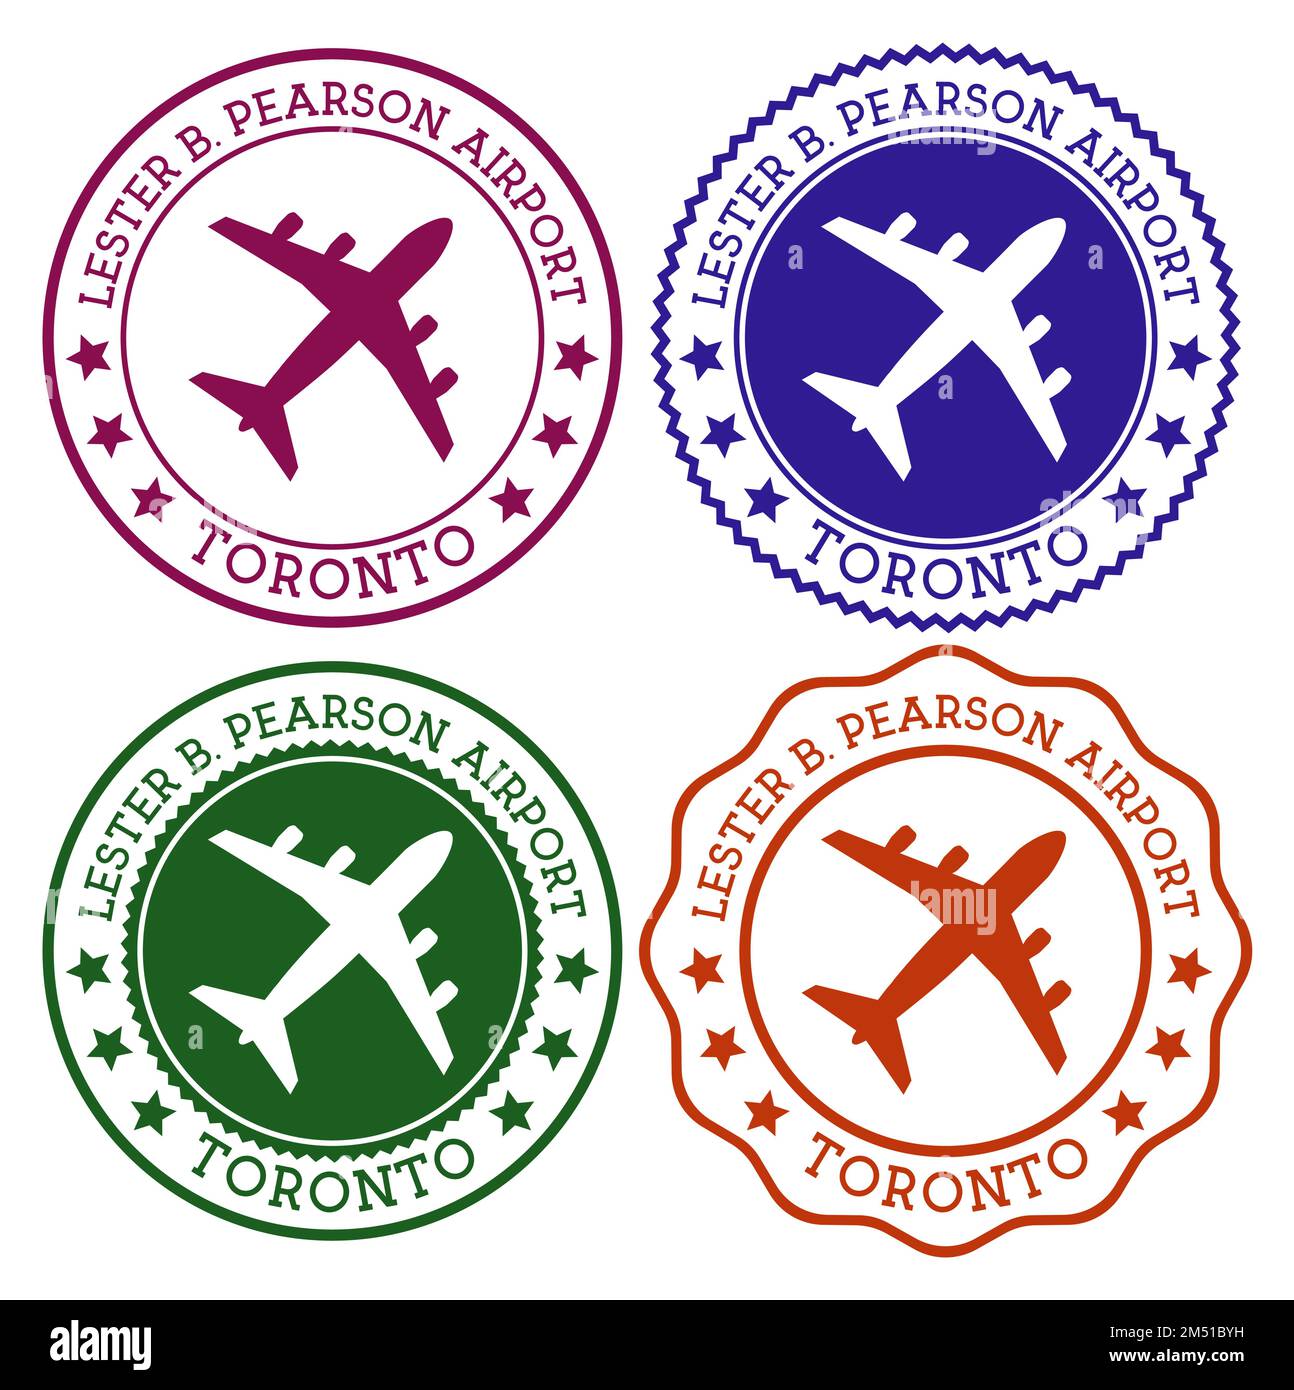 Aeroporto Lester B. Pearson di Toronto. Logo dell'aeroporto di Toronto. Timbri piatti nella tavolozza dei colori dei materiali. Illustrazione vettoriale. Illustrazione Vettoriale